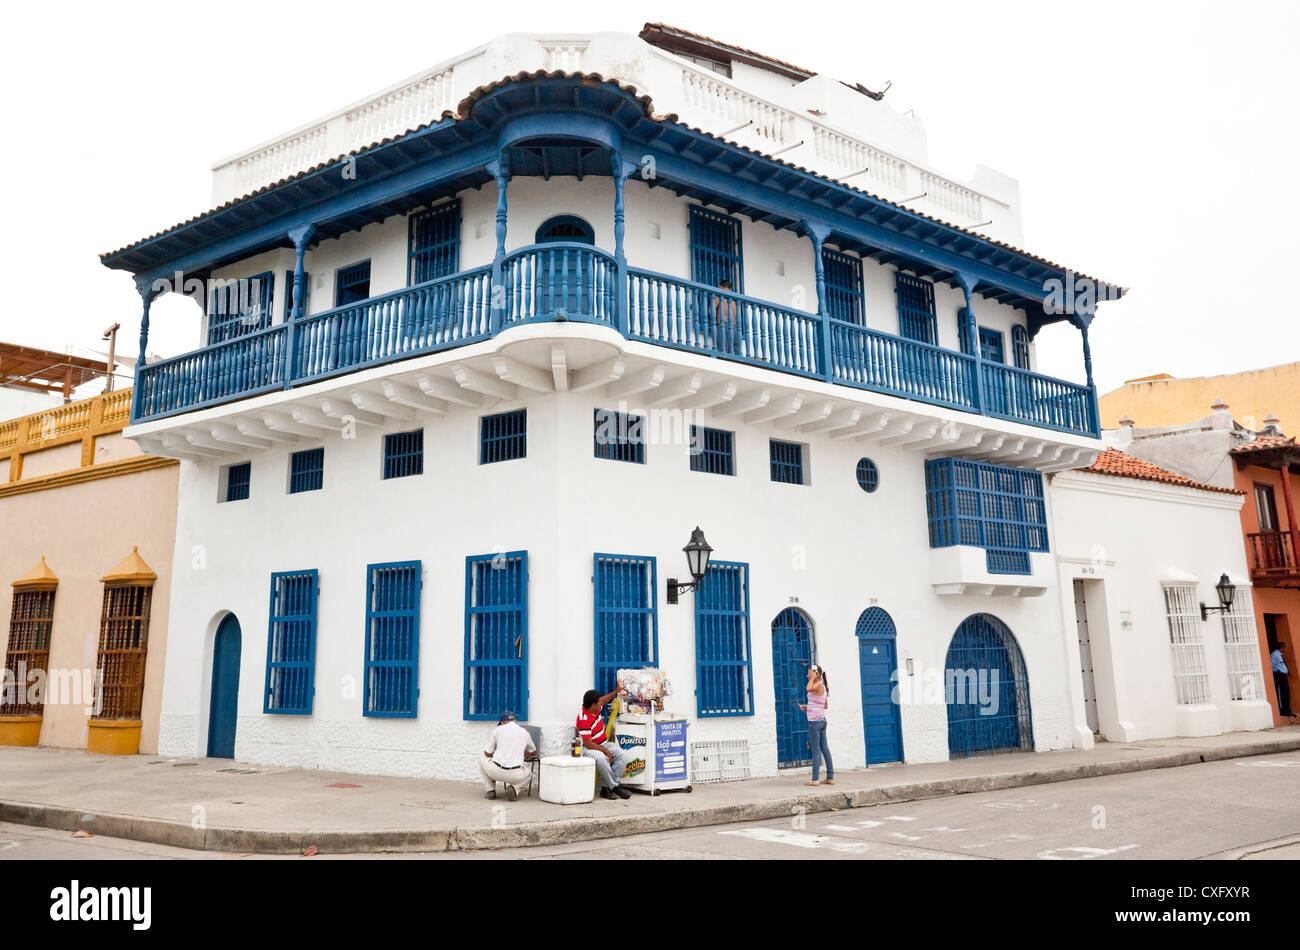 Spanish colonial corner building, Cartagena de Indias, Colombia. Stock Photo